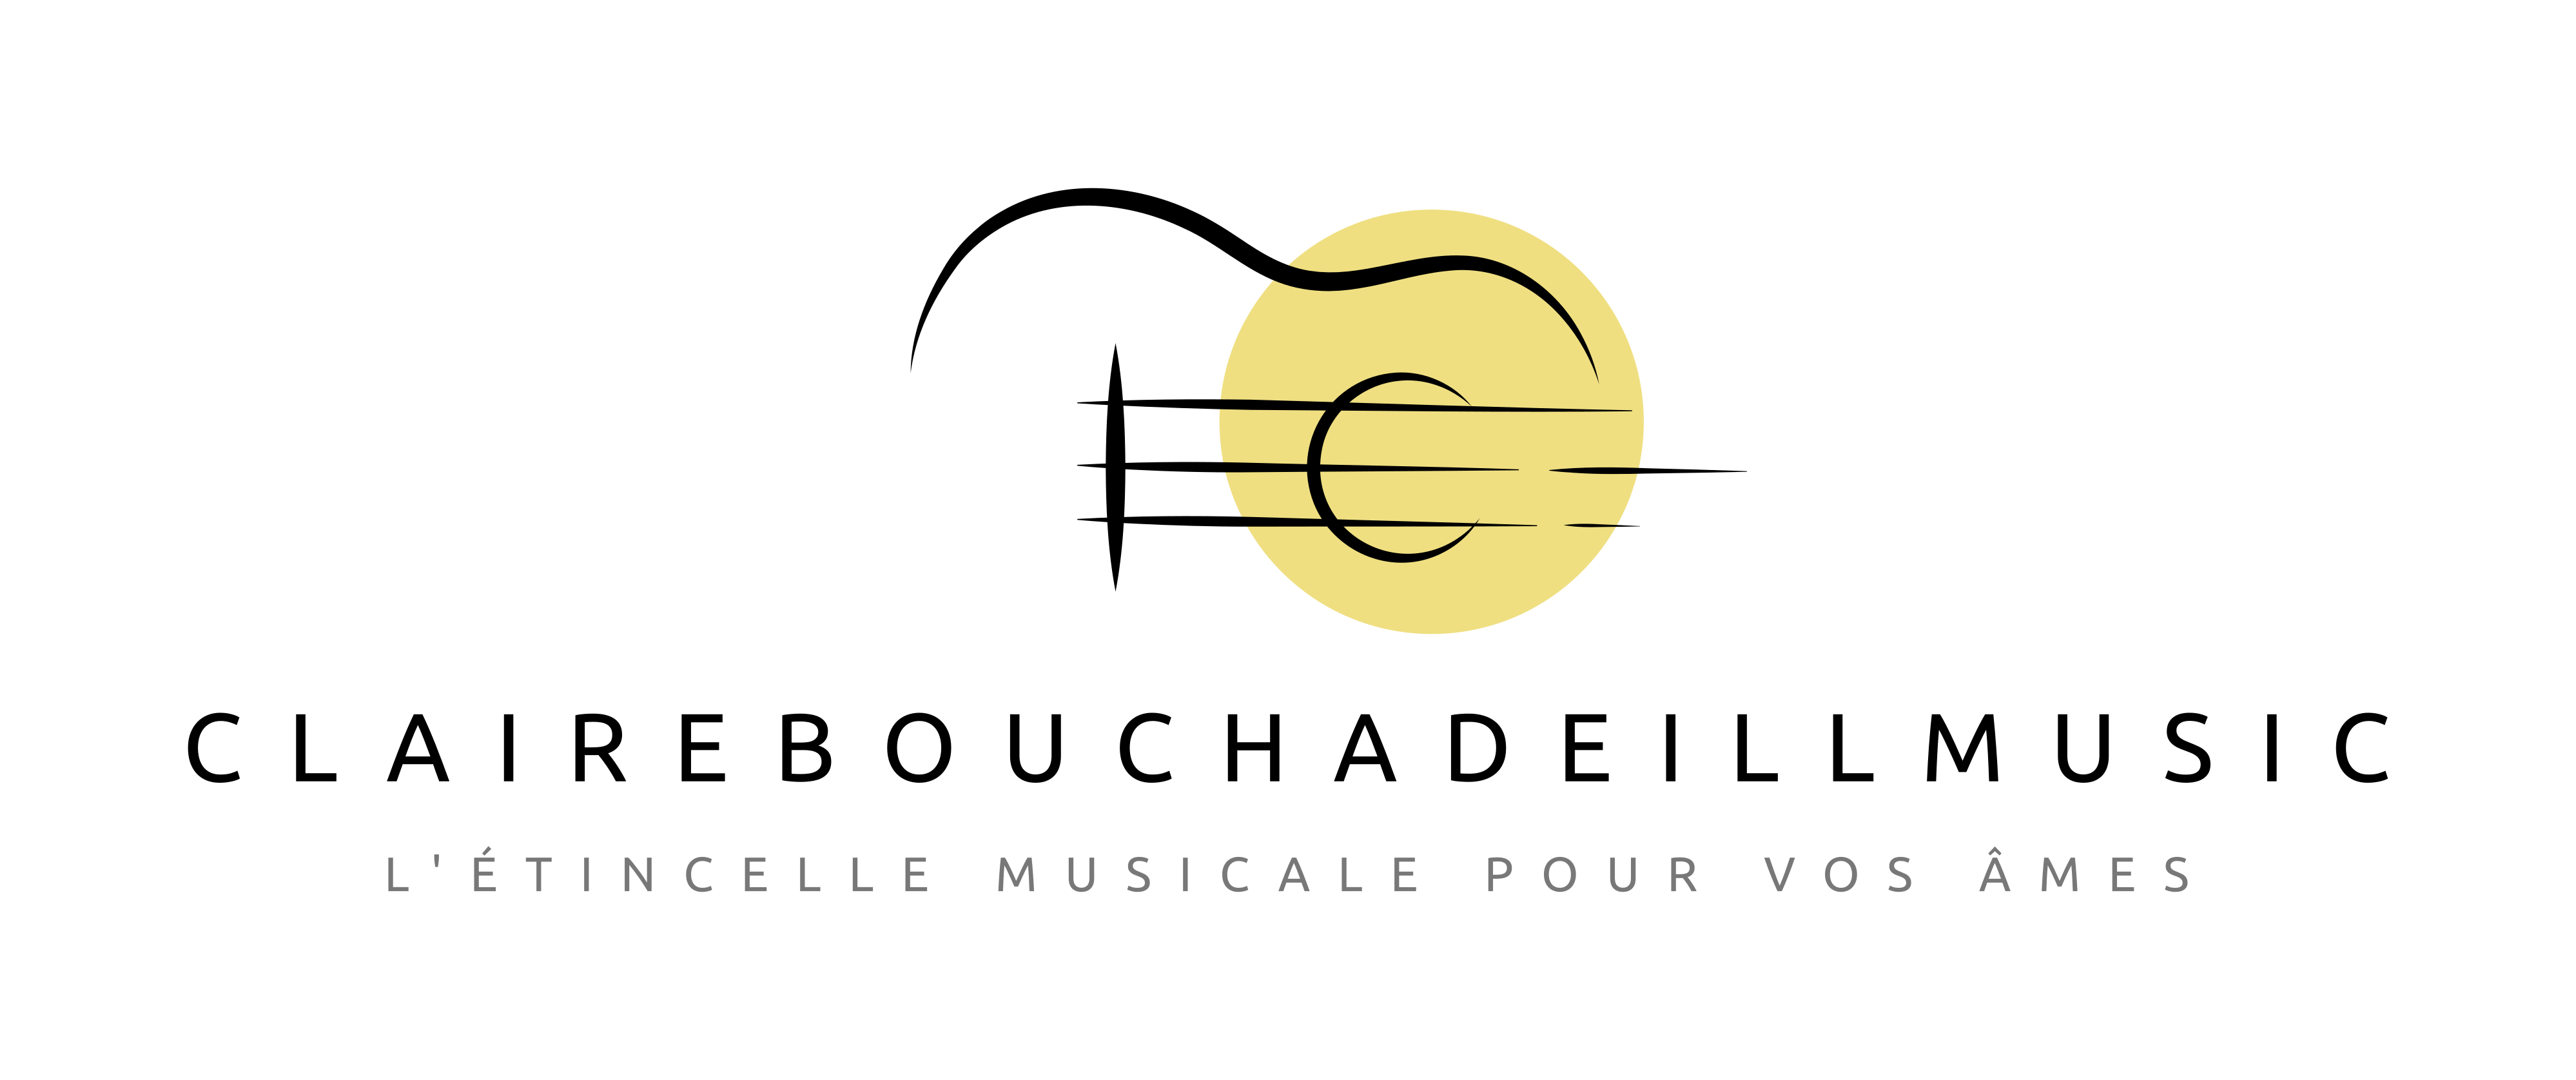 Claire Bouchadeill Music